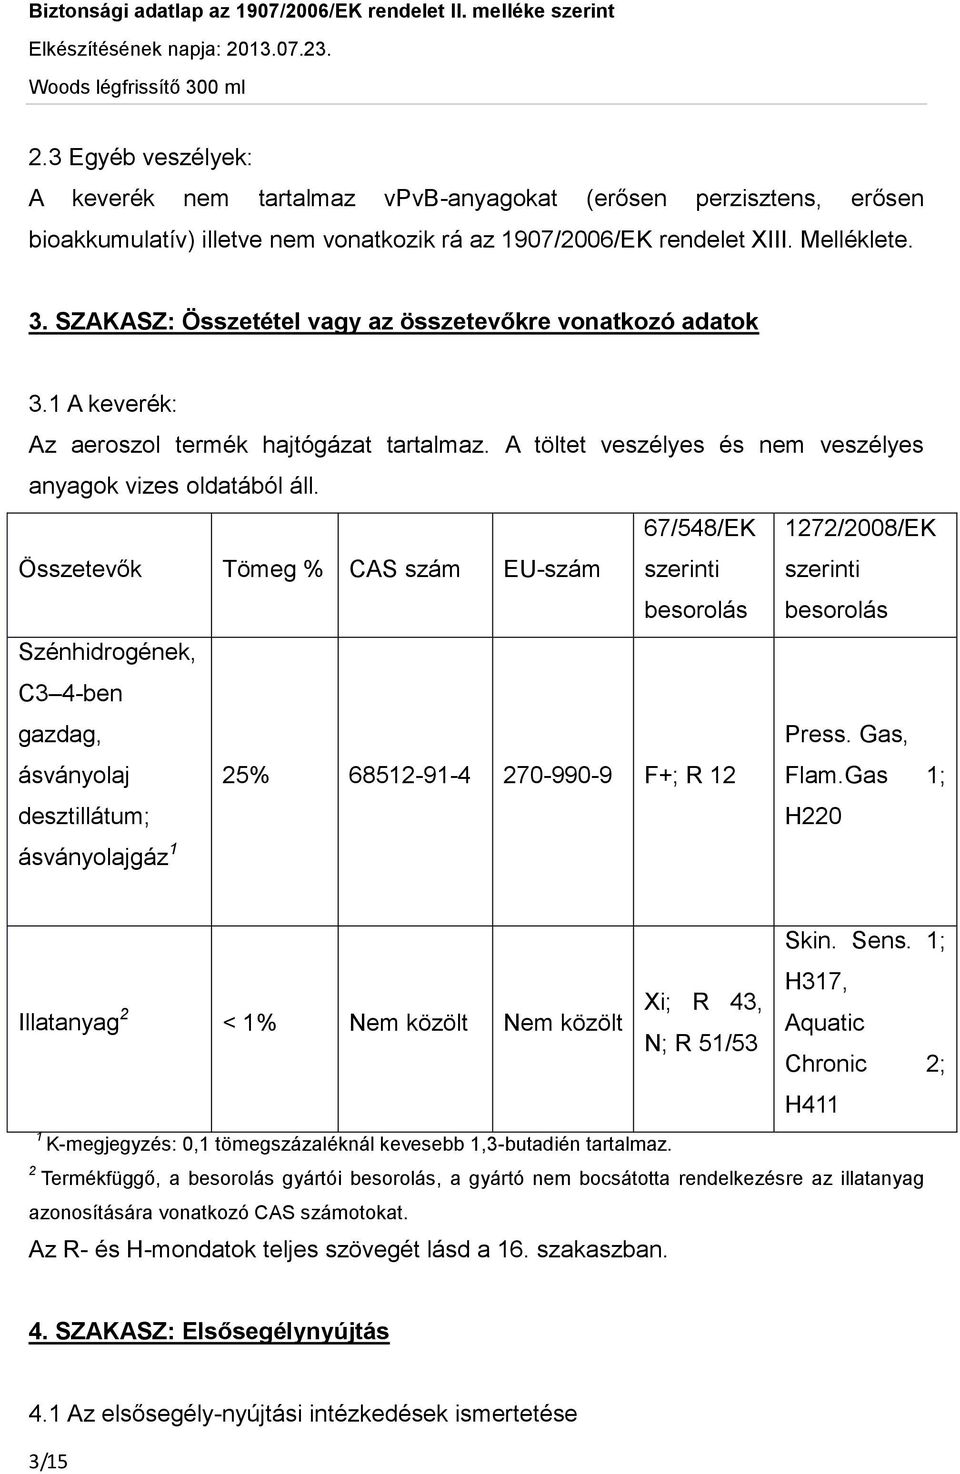 Összetevők Tömeg % CAS szám EU-szám 67/548/EK szerinti besorolás 1272/2008/EK szerinti besorolás Szénhidrogének, C3 4-ben gazdag, Press. Gas, ásványolaj 25% 68512-91-4 270-990-9 F+; R 12 Flam.